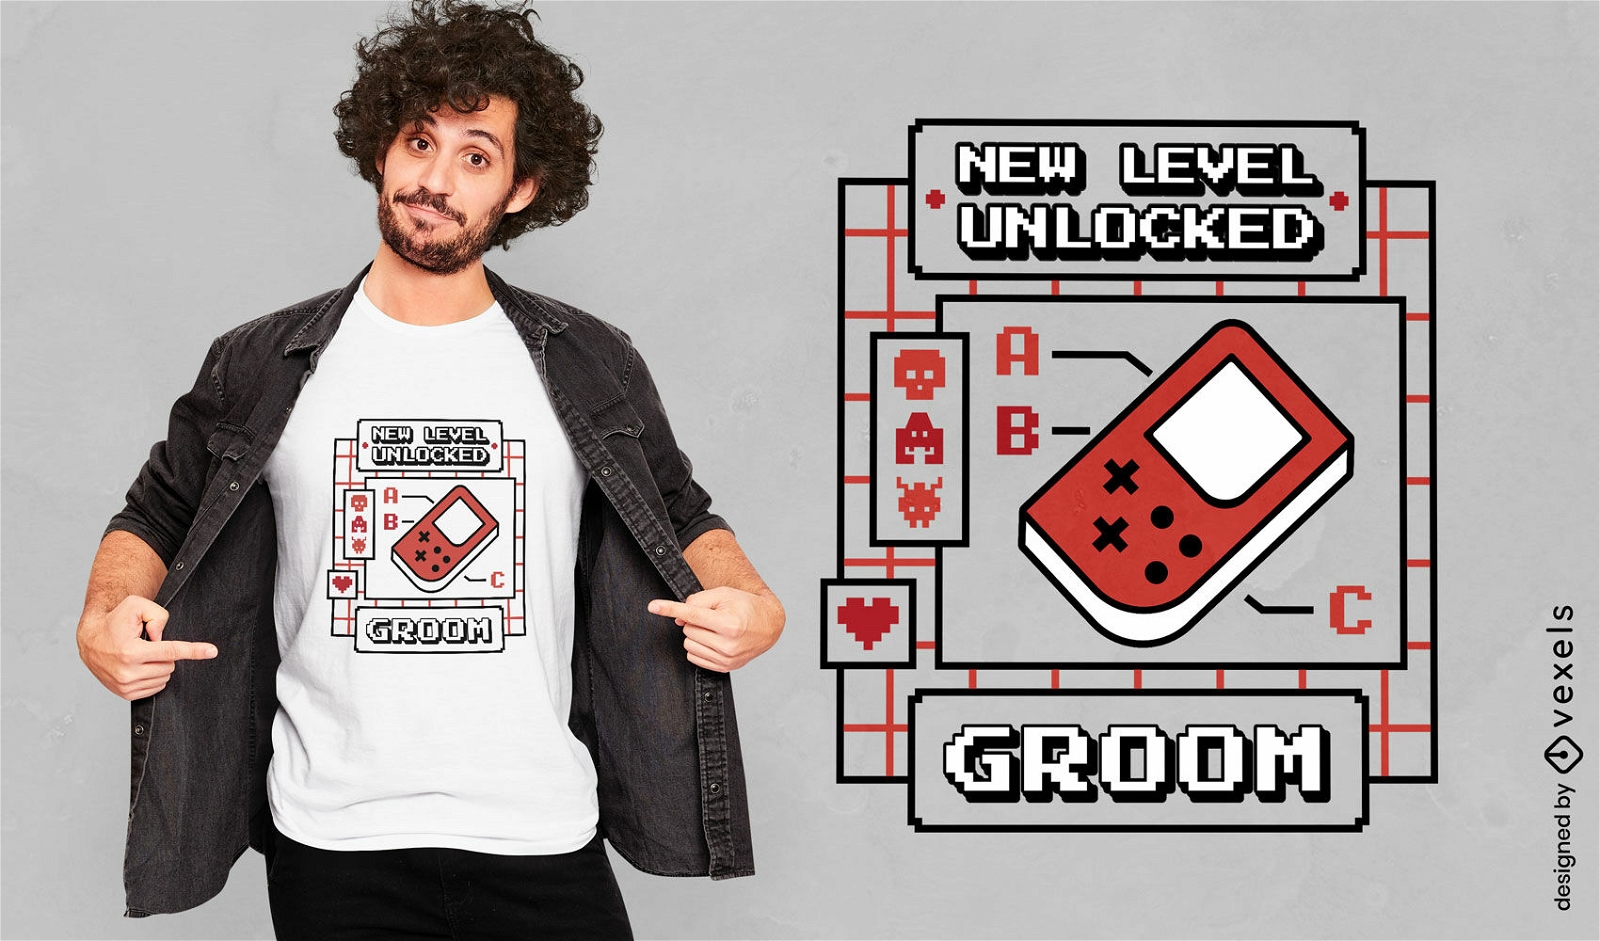 Groom's new level t-shirt design